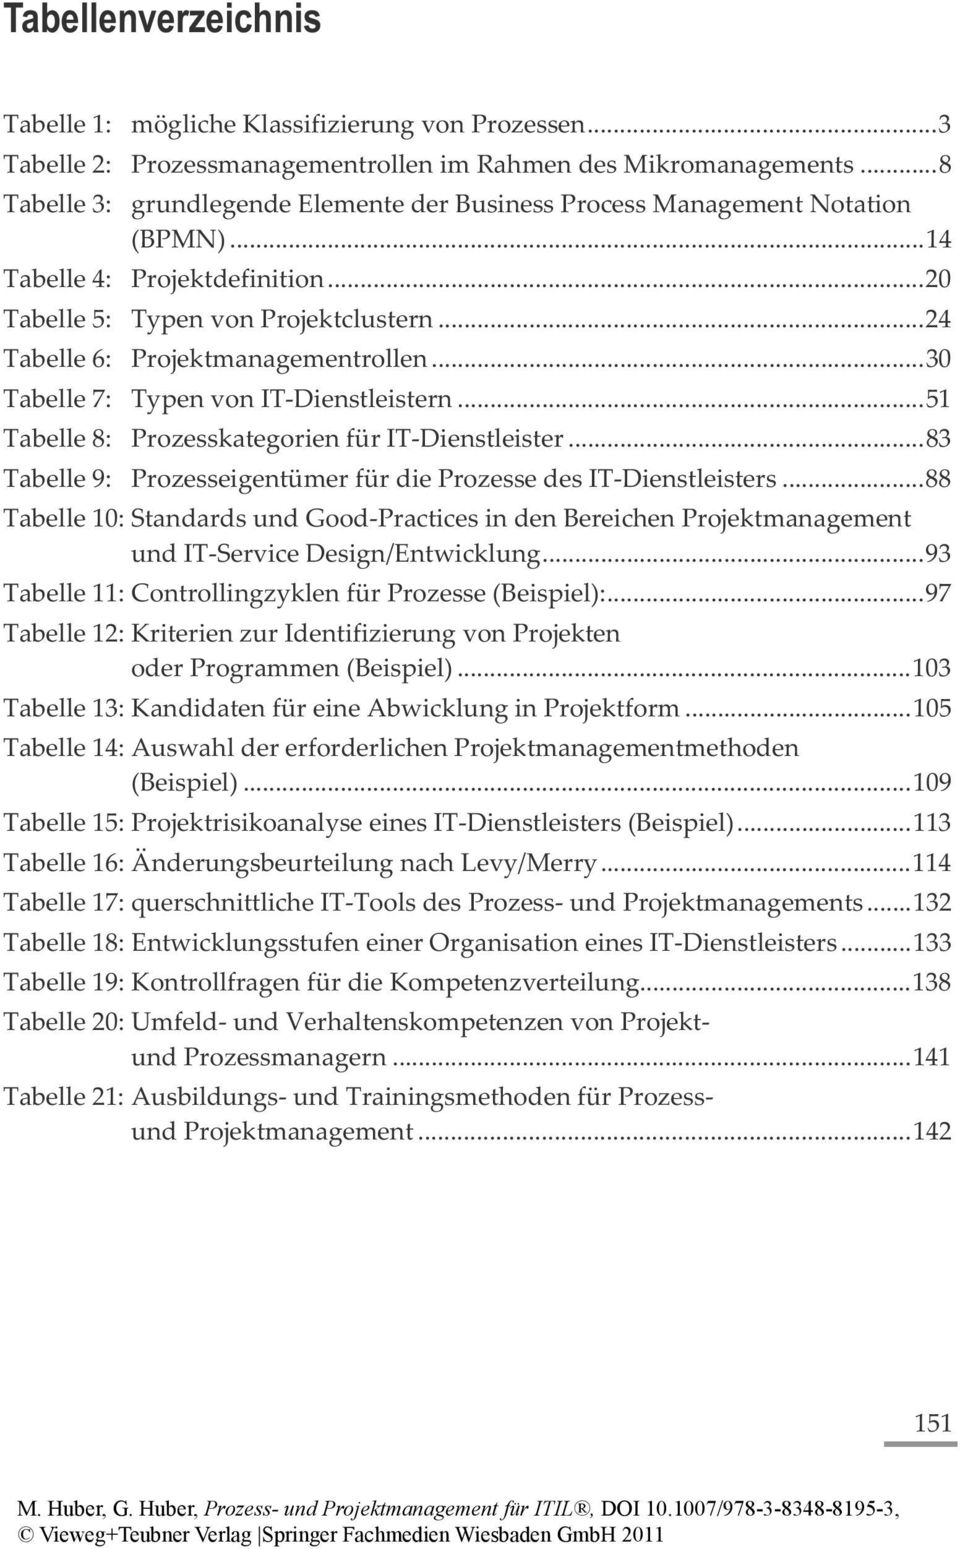 .. 24 Tabelle 6: Projektmanagementrollen... 30 Tabelle 7: Typen von IT-Dienstleistern... 51 Tabelle 8: Prozesskategorien für IT-Dienstleister.